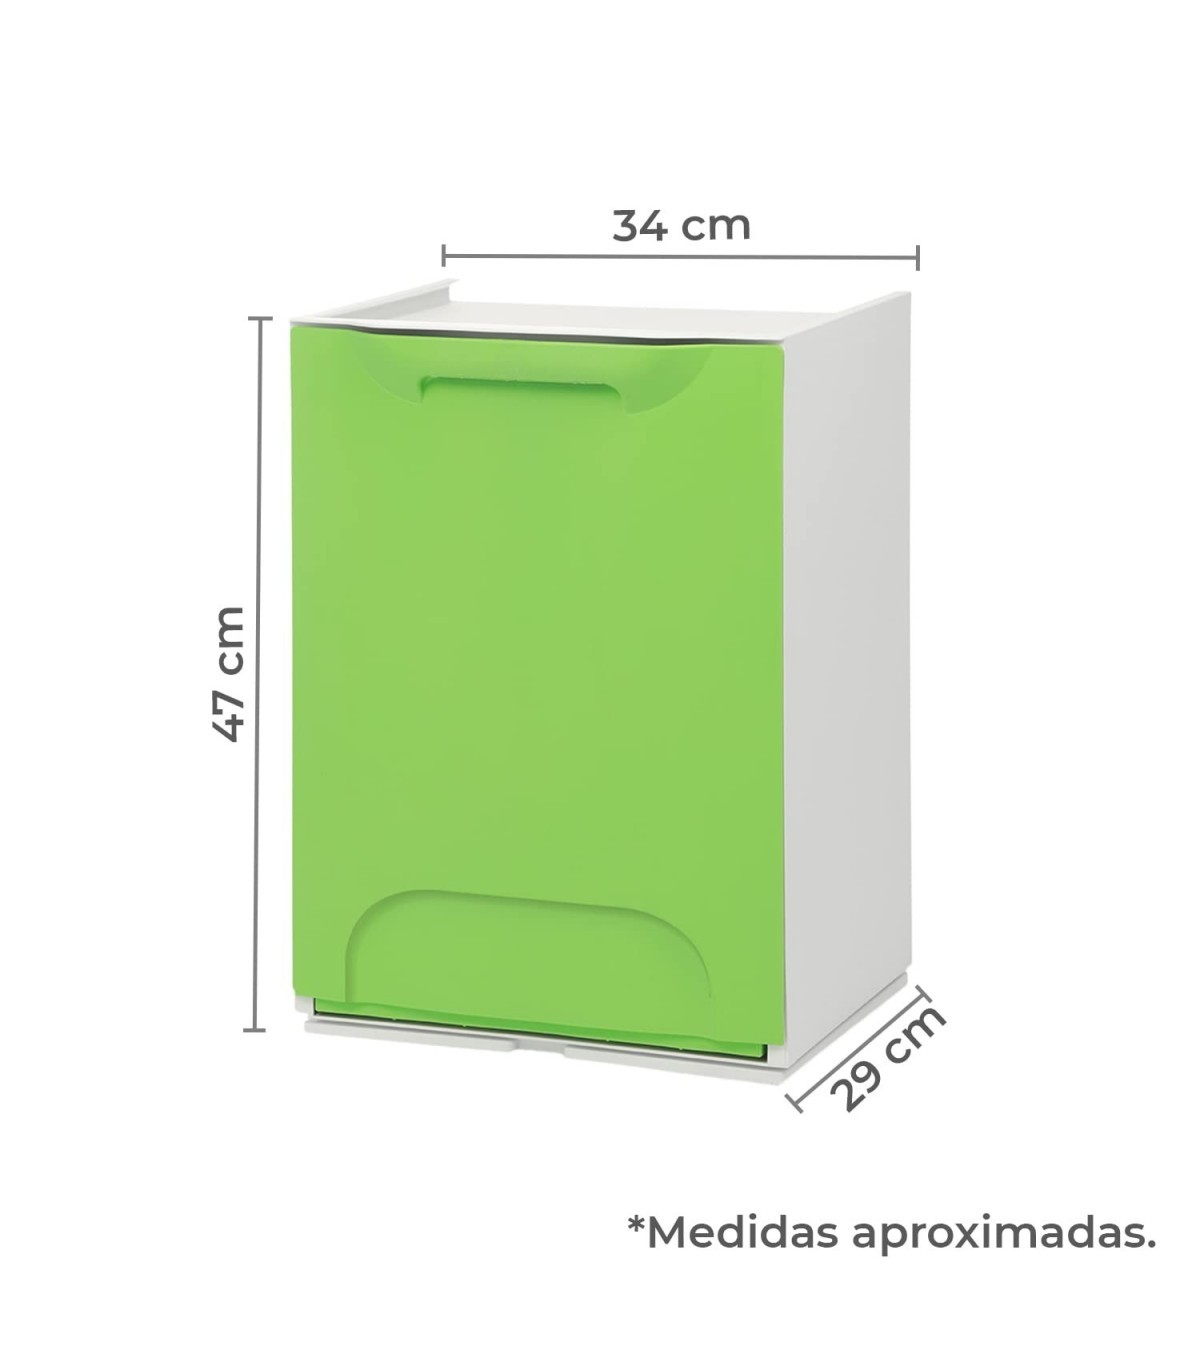 Cubos de Basura Reciclaje Apilables. 20L, 34x29x47cm (Verde)